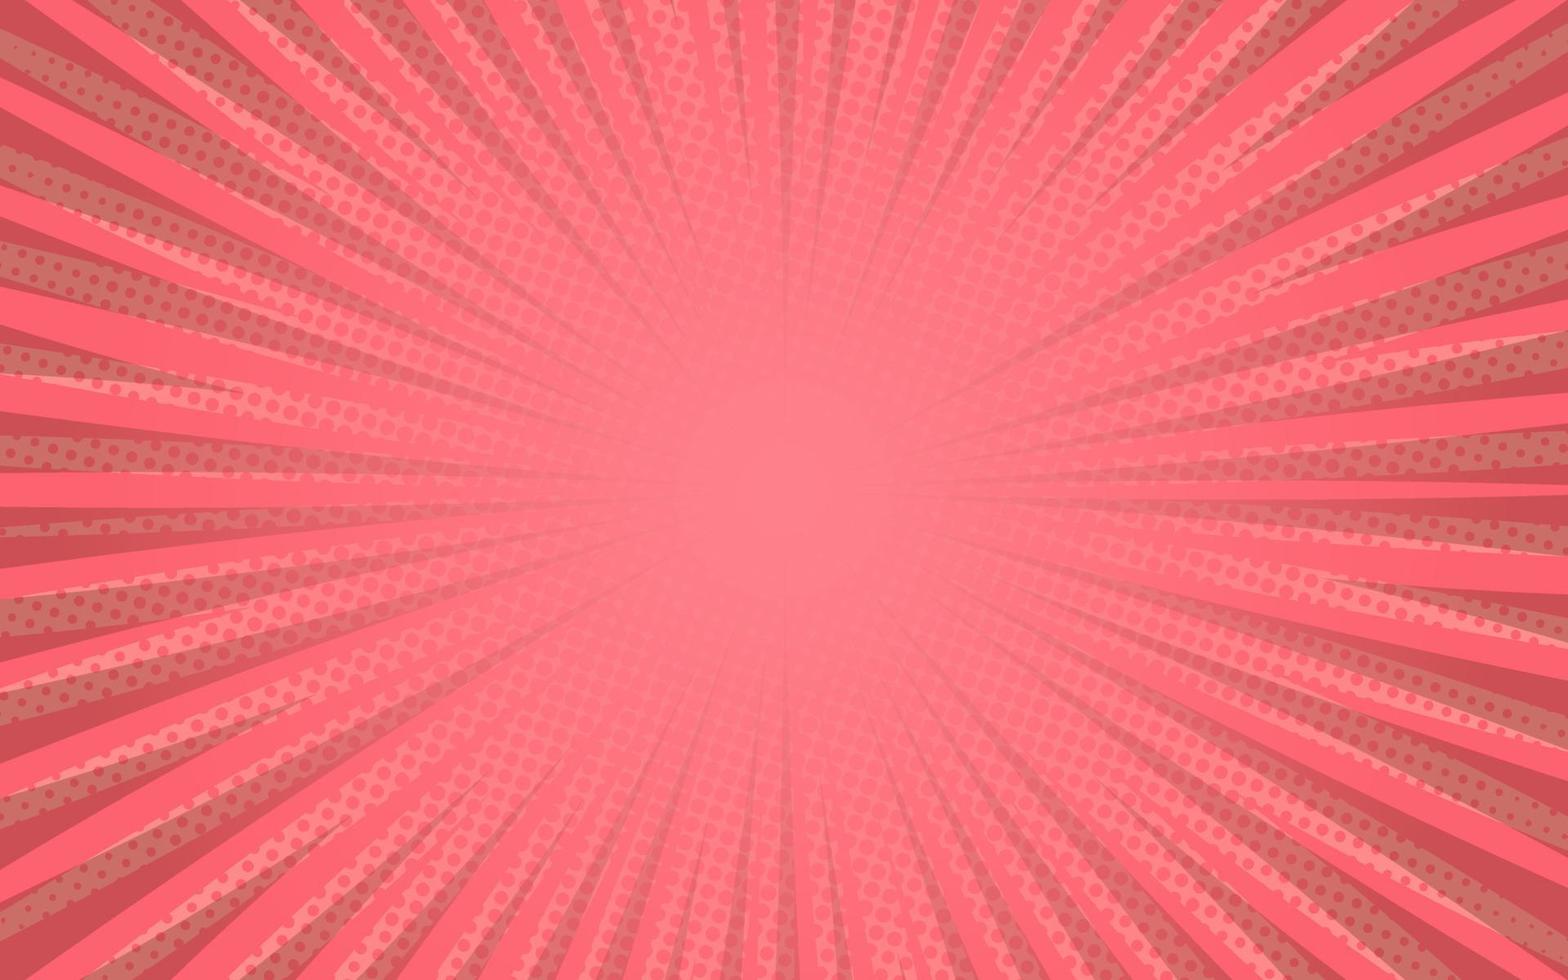 raios de sol retrô estilo vintage em fundo rosa, padrão em quadrinhos com starburst e meio-tom. efeito de sunburst retrô dos desenhos animados com pontos. raios. ilustração vetorial de banner de verão vetor